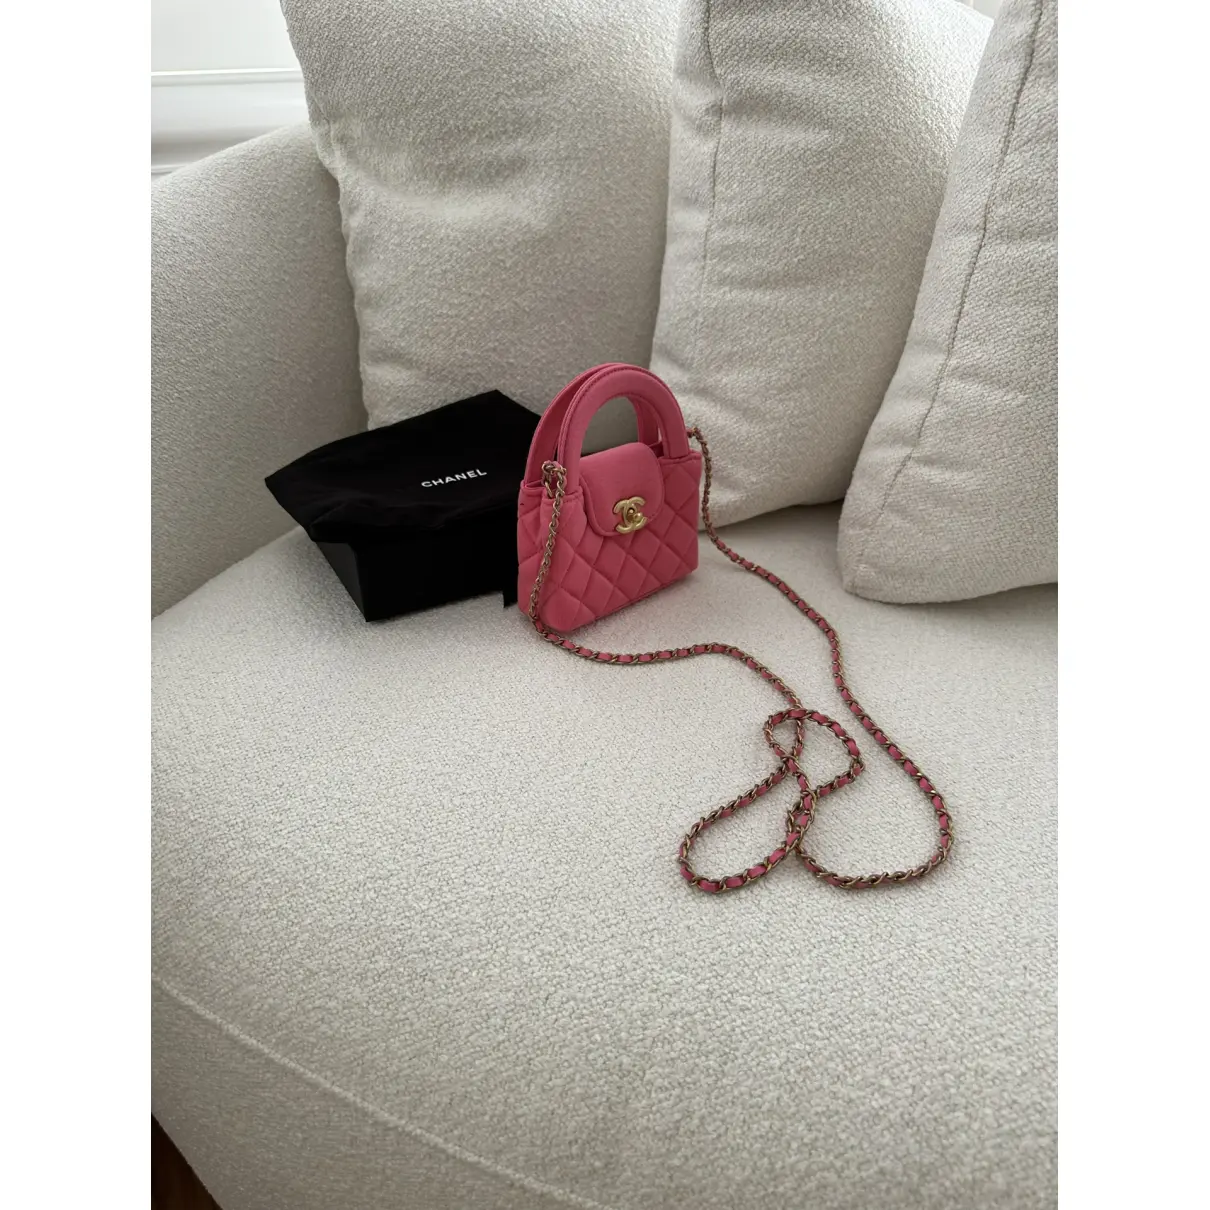 Petite Shopping Tote cloth handbag Chanel - Vintage